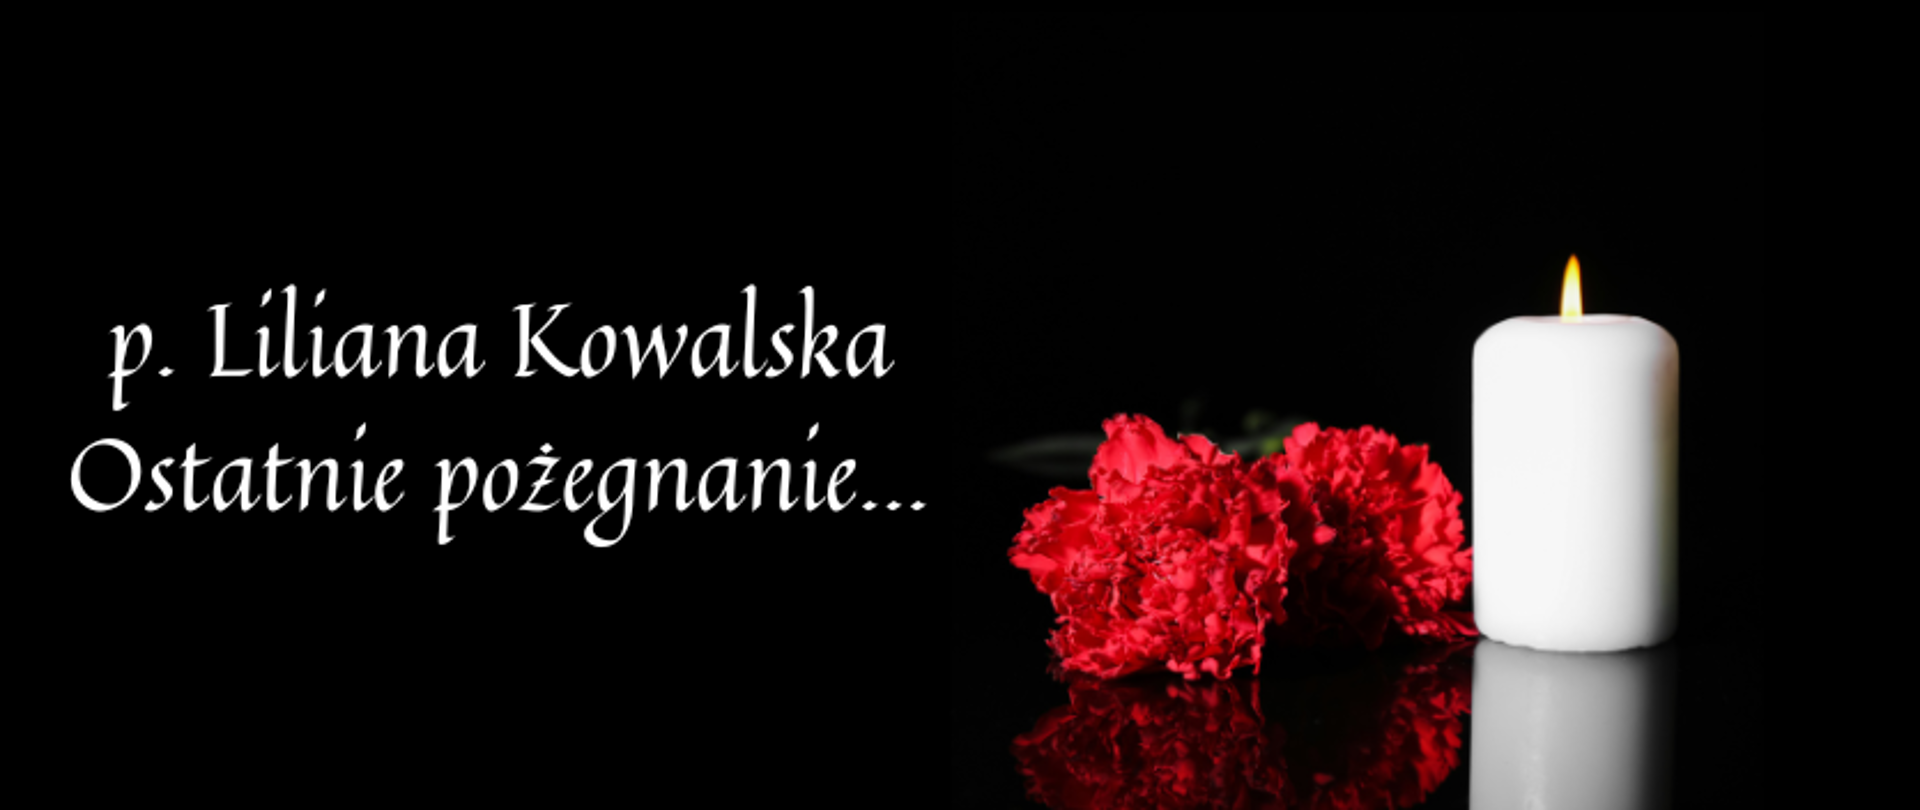 grafika z napisem p. Liliana Kowalska Ostatnie pożegnanie. Na czarnym tle biała paląca się świeca oraz dwa czerwone kwiaty goździka.